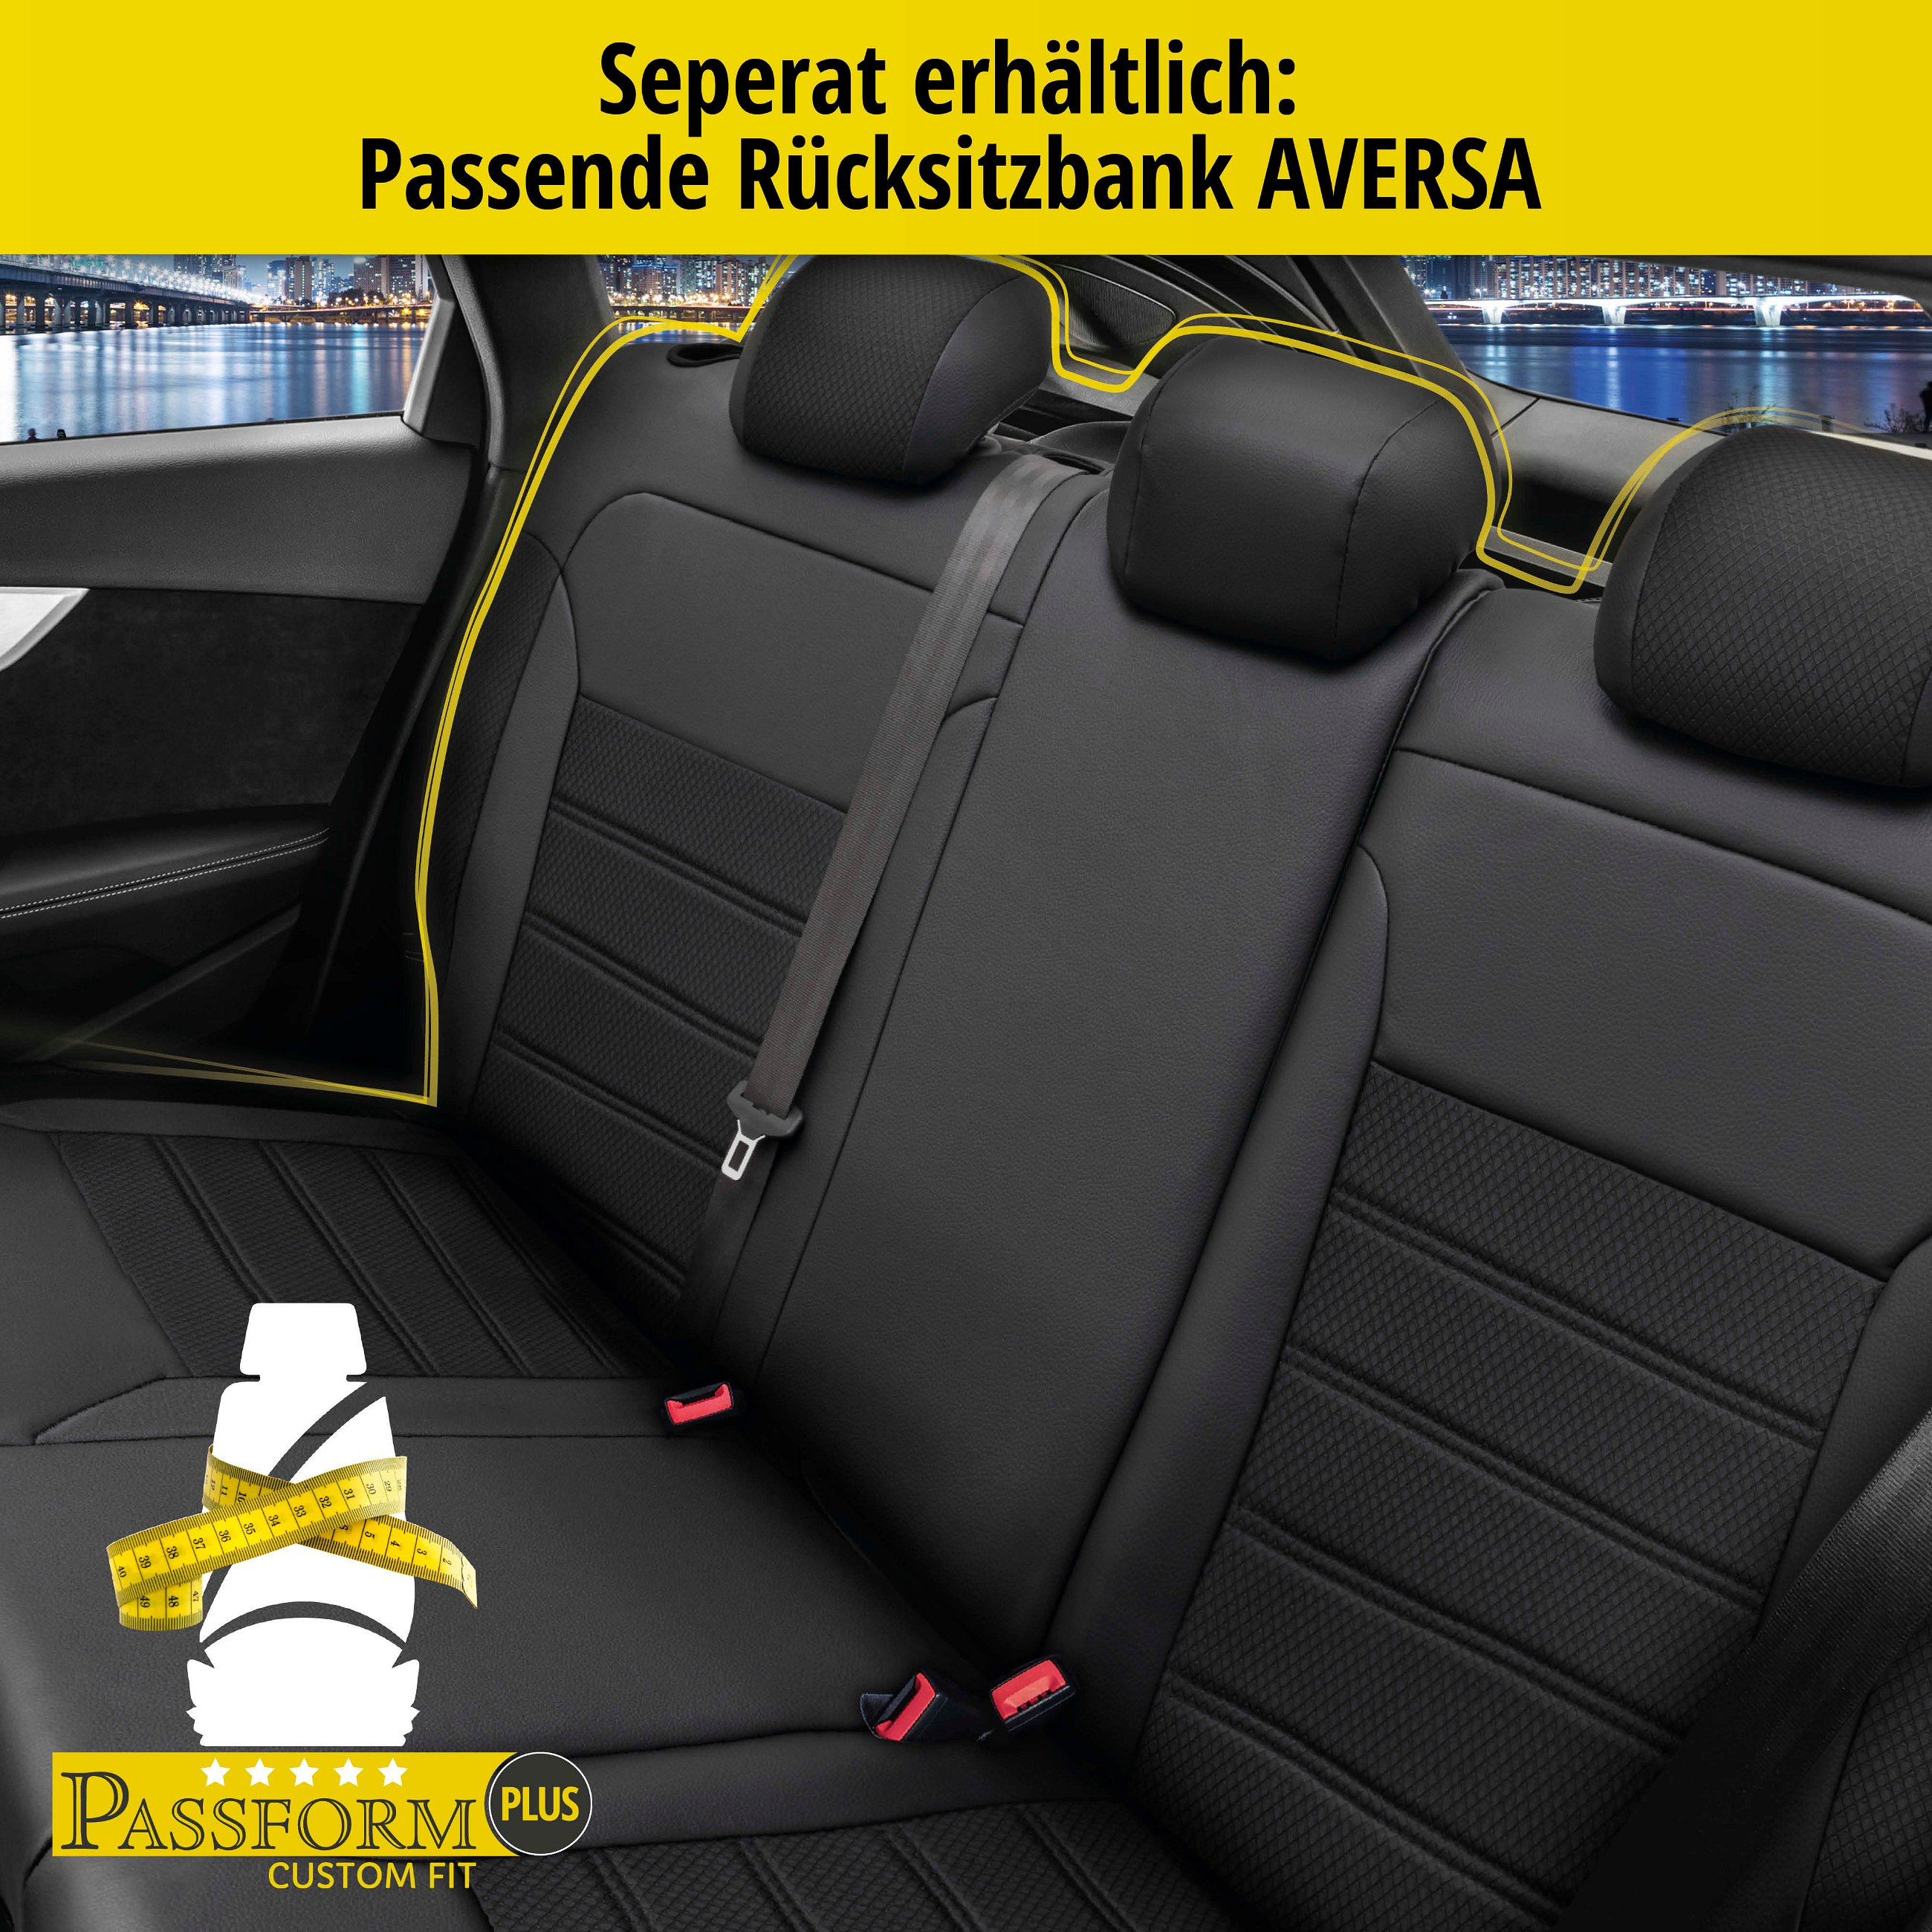 Passform Sitzbezug Aversa für VW Tiguan 09/2007 - 07/2018, 2 Einzelsitzbezüge für Normalsitze